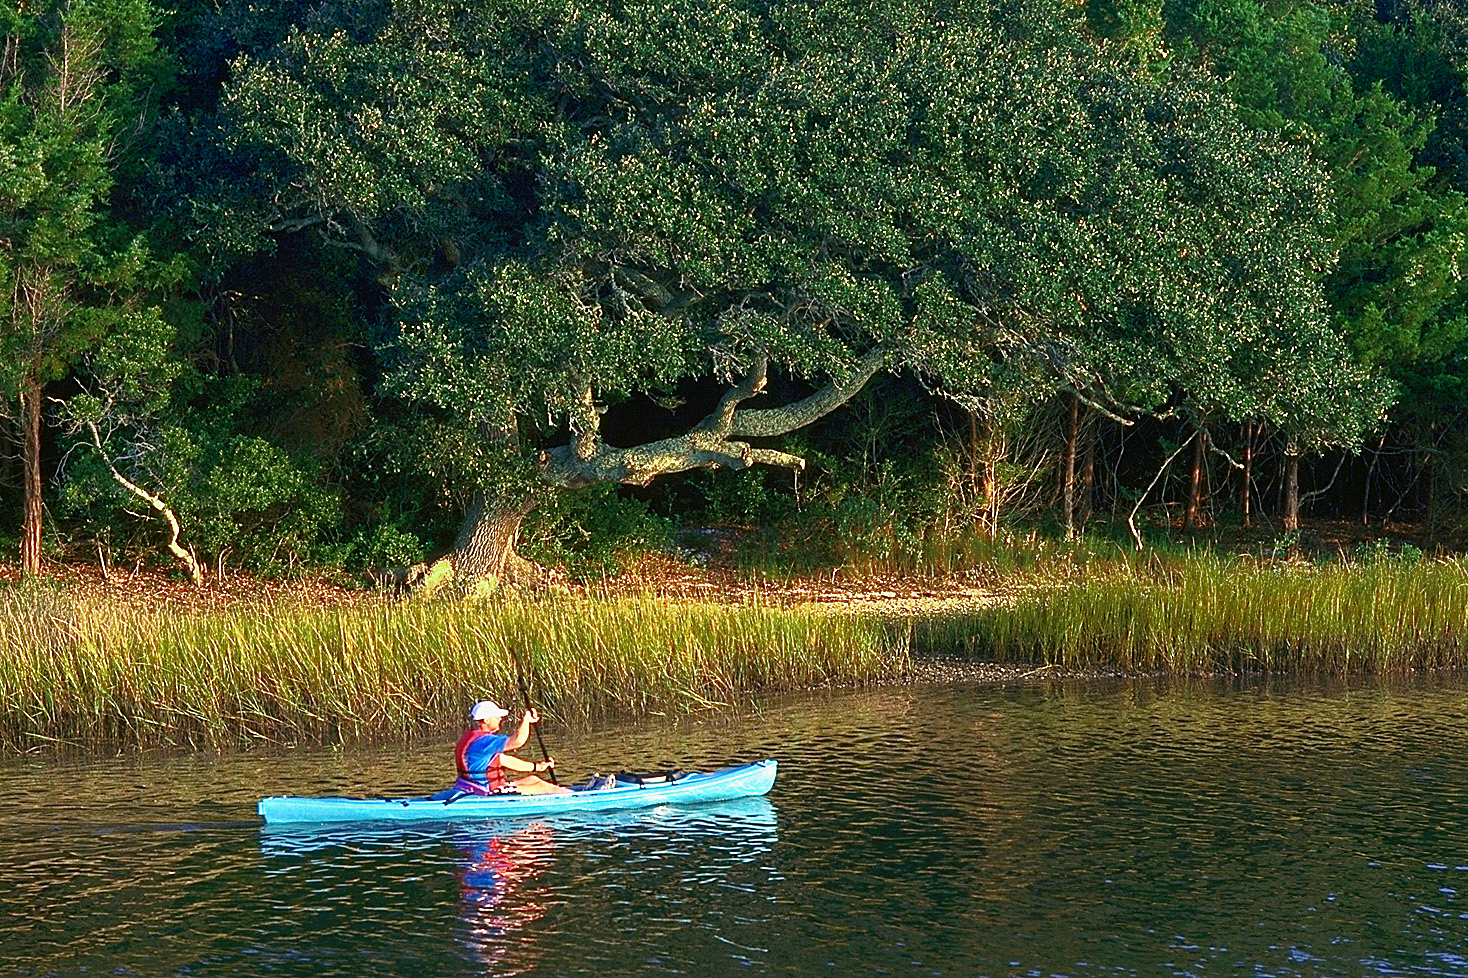 Solo kayaker in river